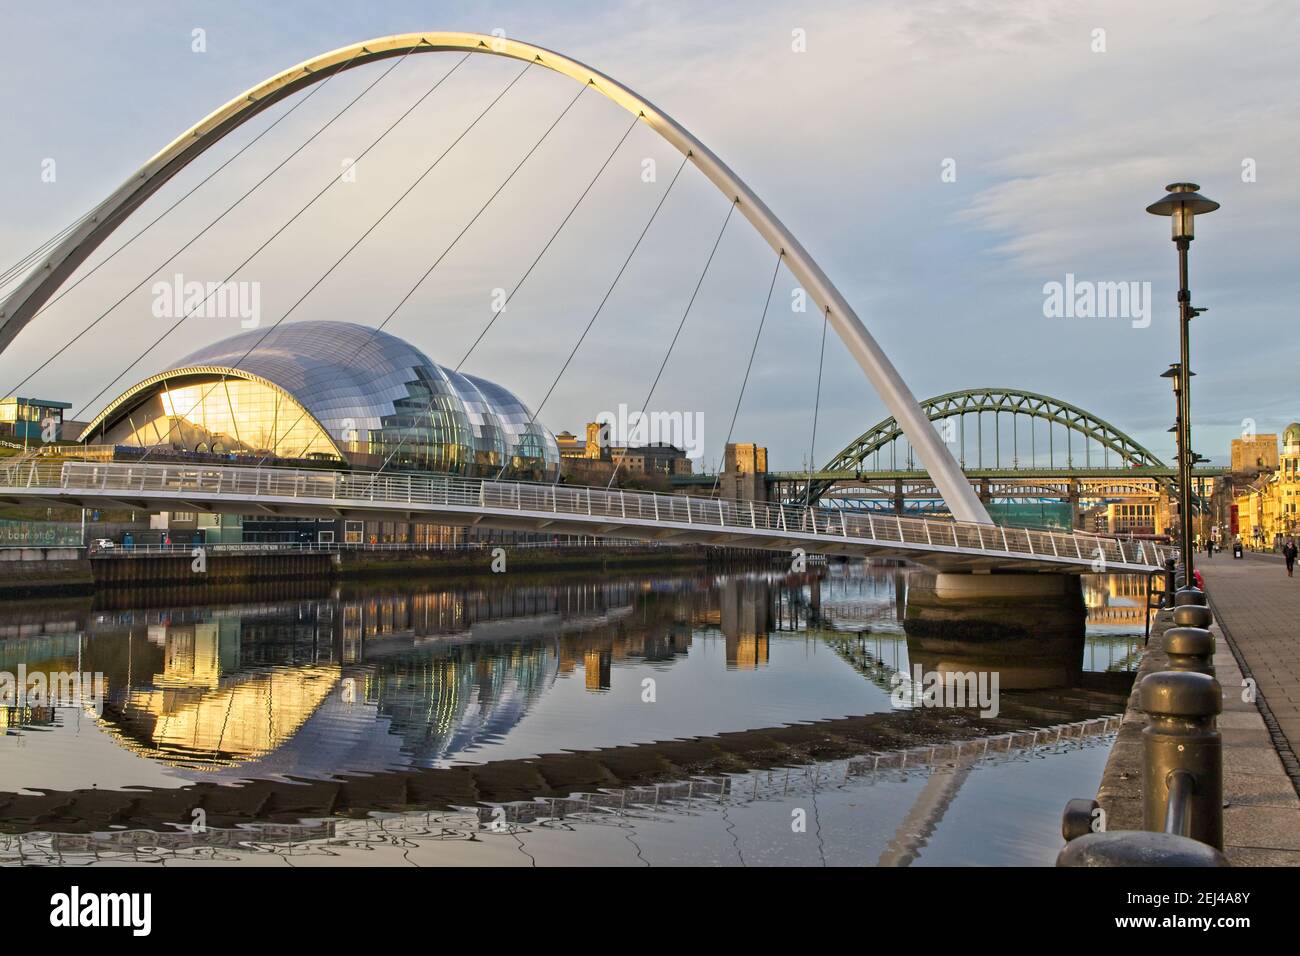 Il Gateshead Millennium Bridge, il Sage Center e il Tyne Bridge sono stati catturati al mattino presto dal Newcastle's Quayside di Tyne and Wear, Regno Unito Foto Stock